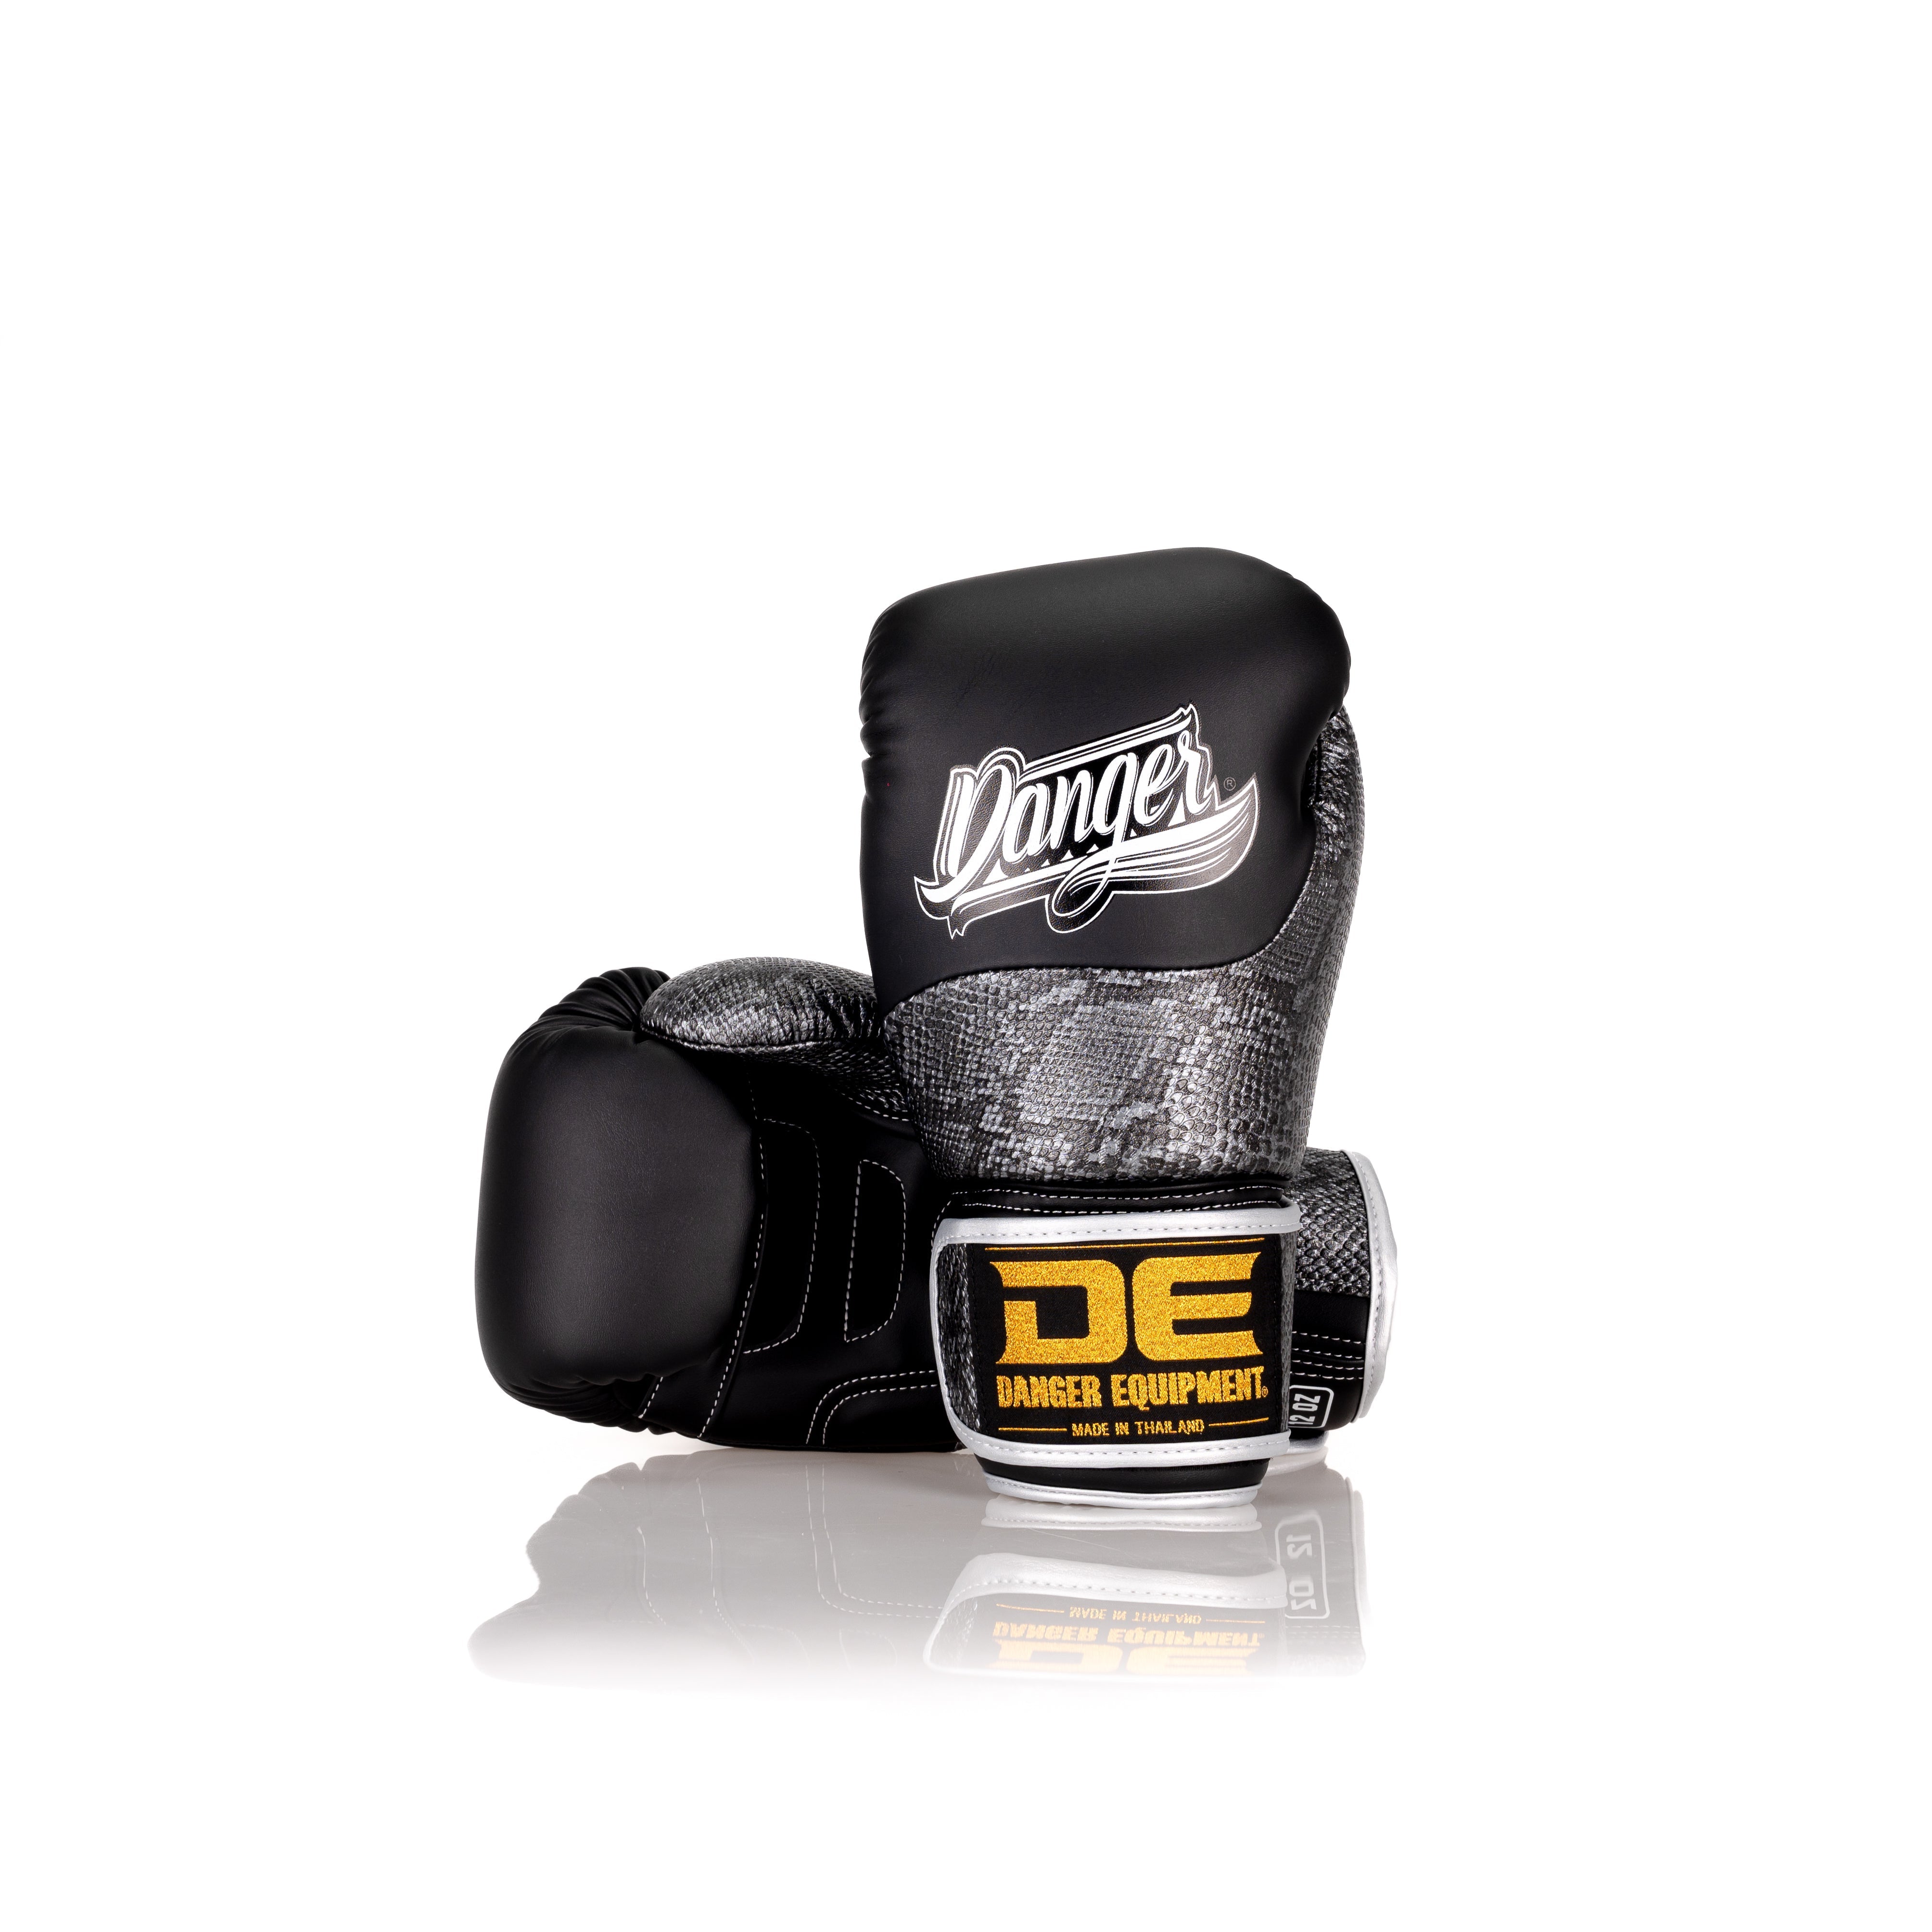 Black Danger Equipment Evolution Deluxe Boxing Gloves Front/Back